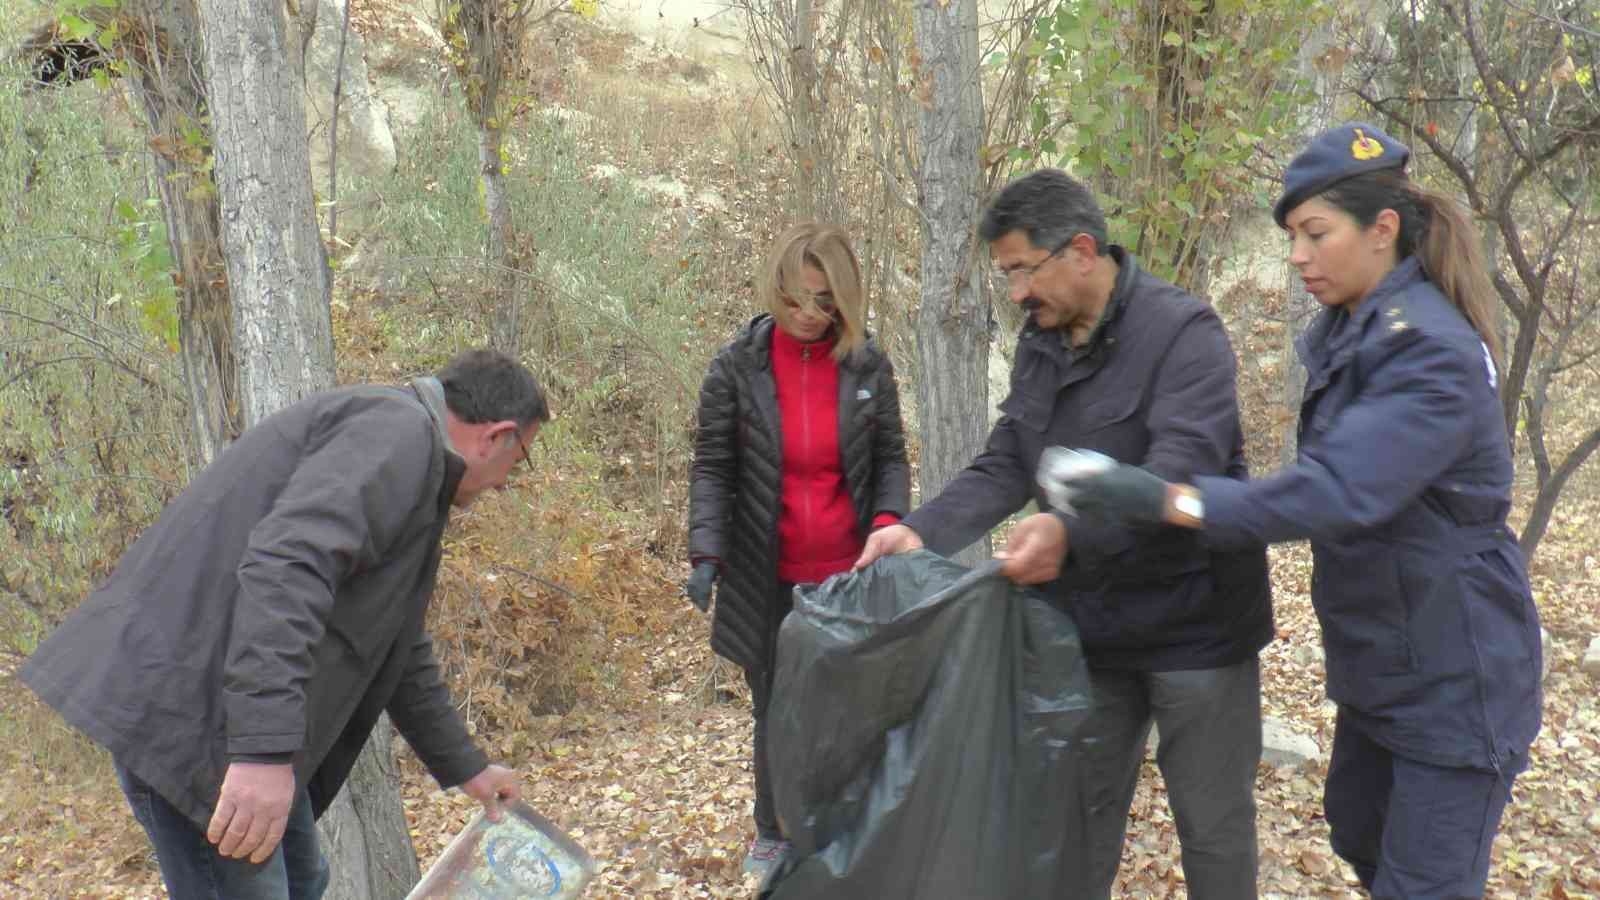 Çevre temizliği yapan Nevşehir Valisi Becel: “En güzel temizlik, hiç kirletmemektir”